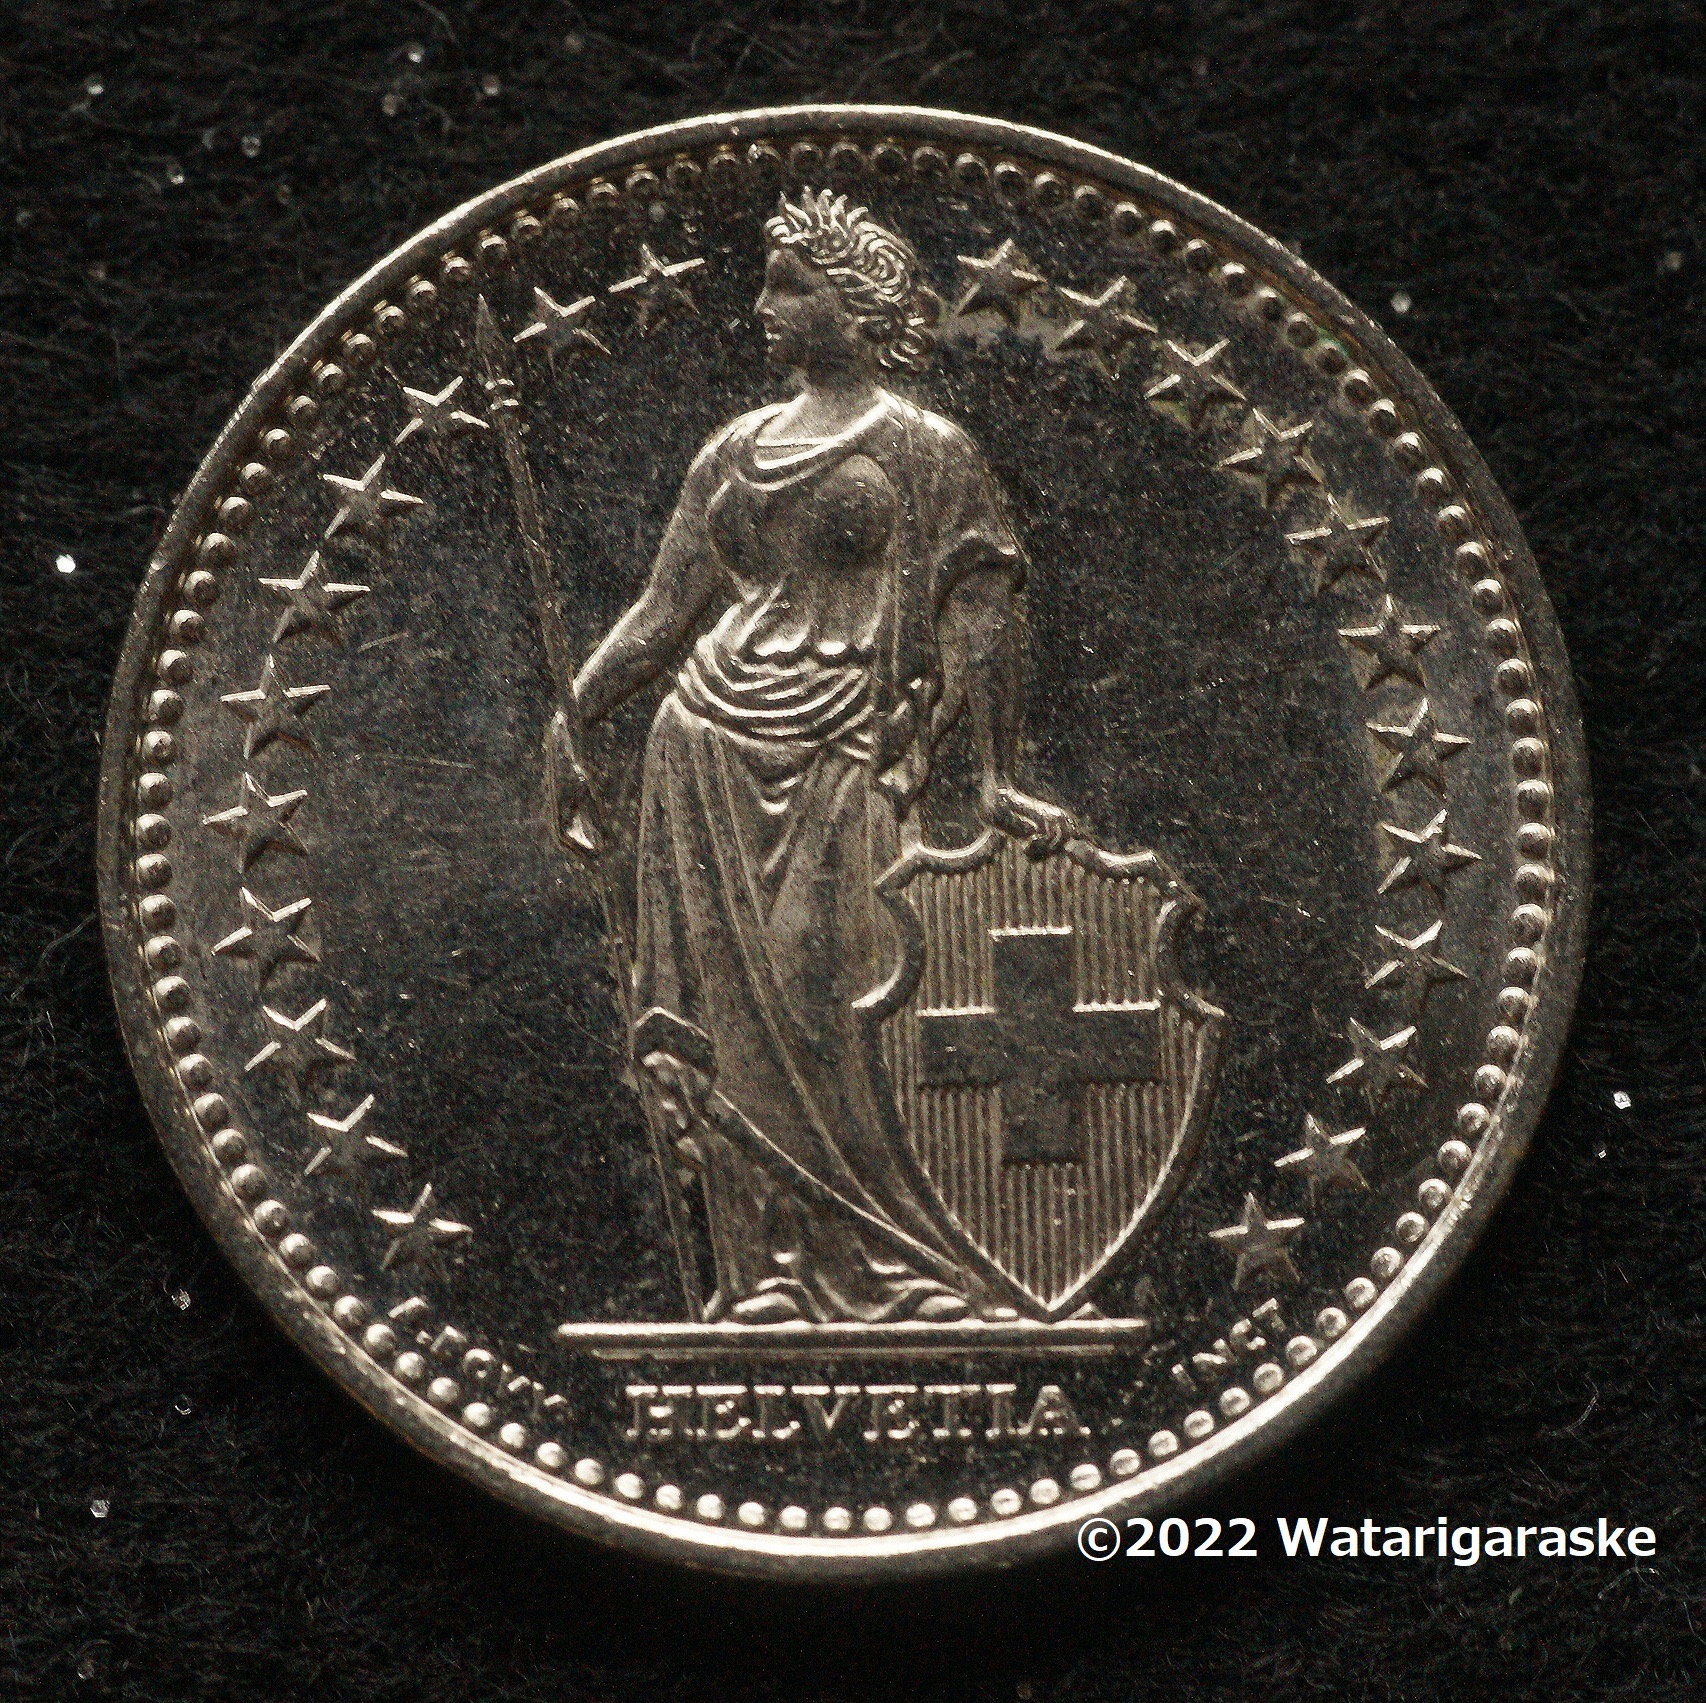 世界で一番古くからデザインが変わっていないコイン・・スイスコイン